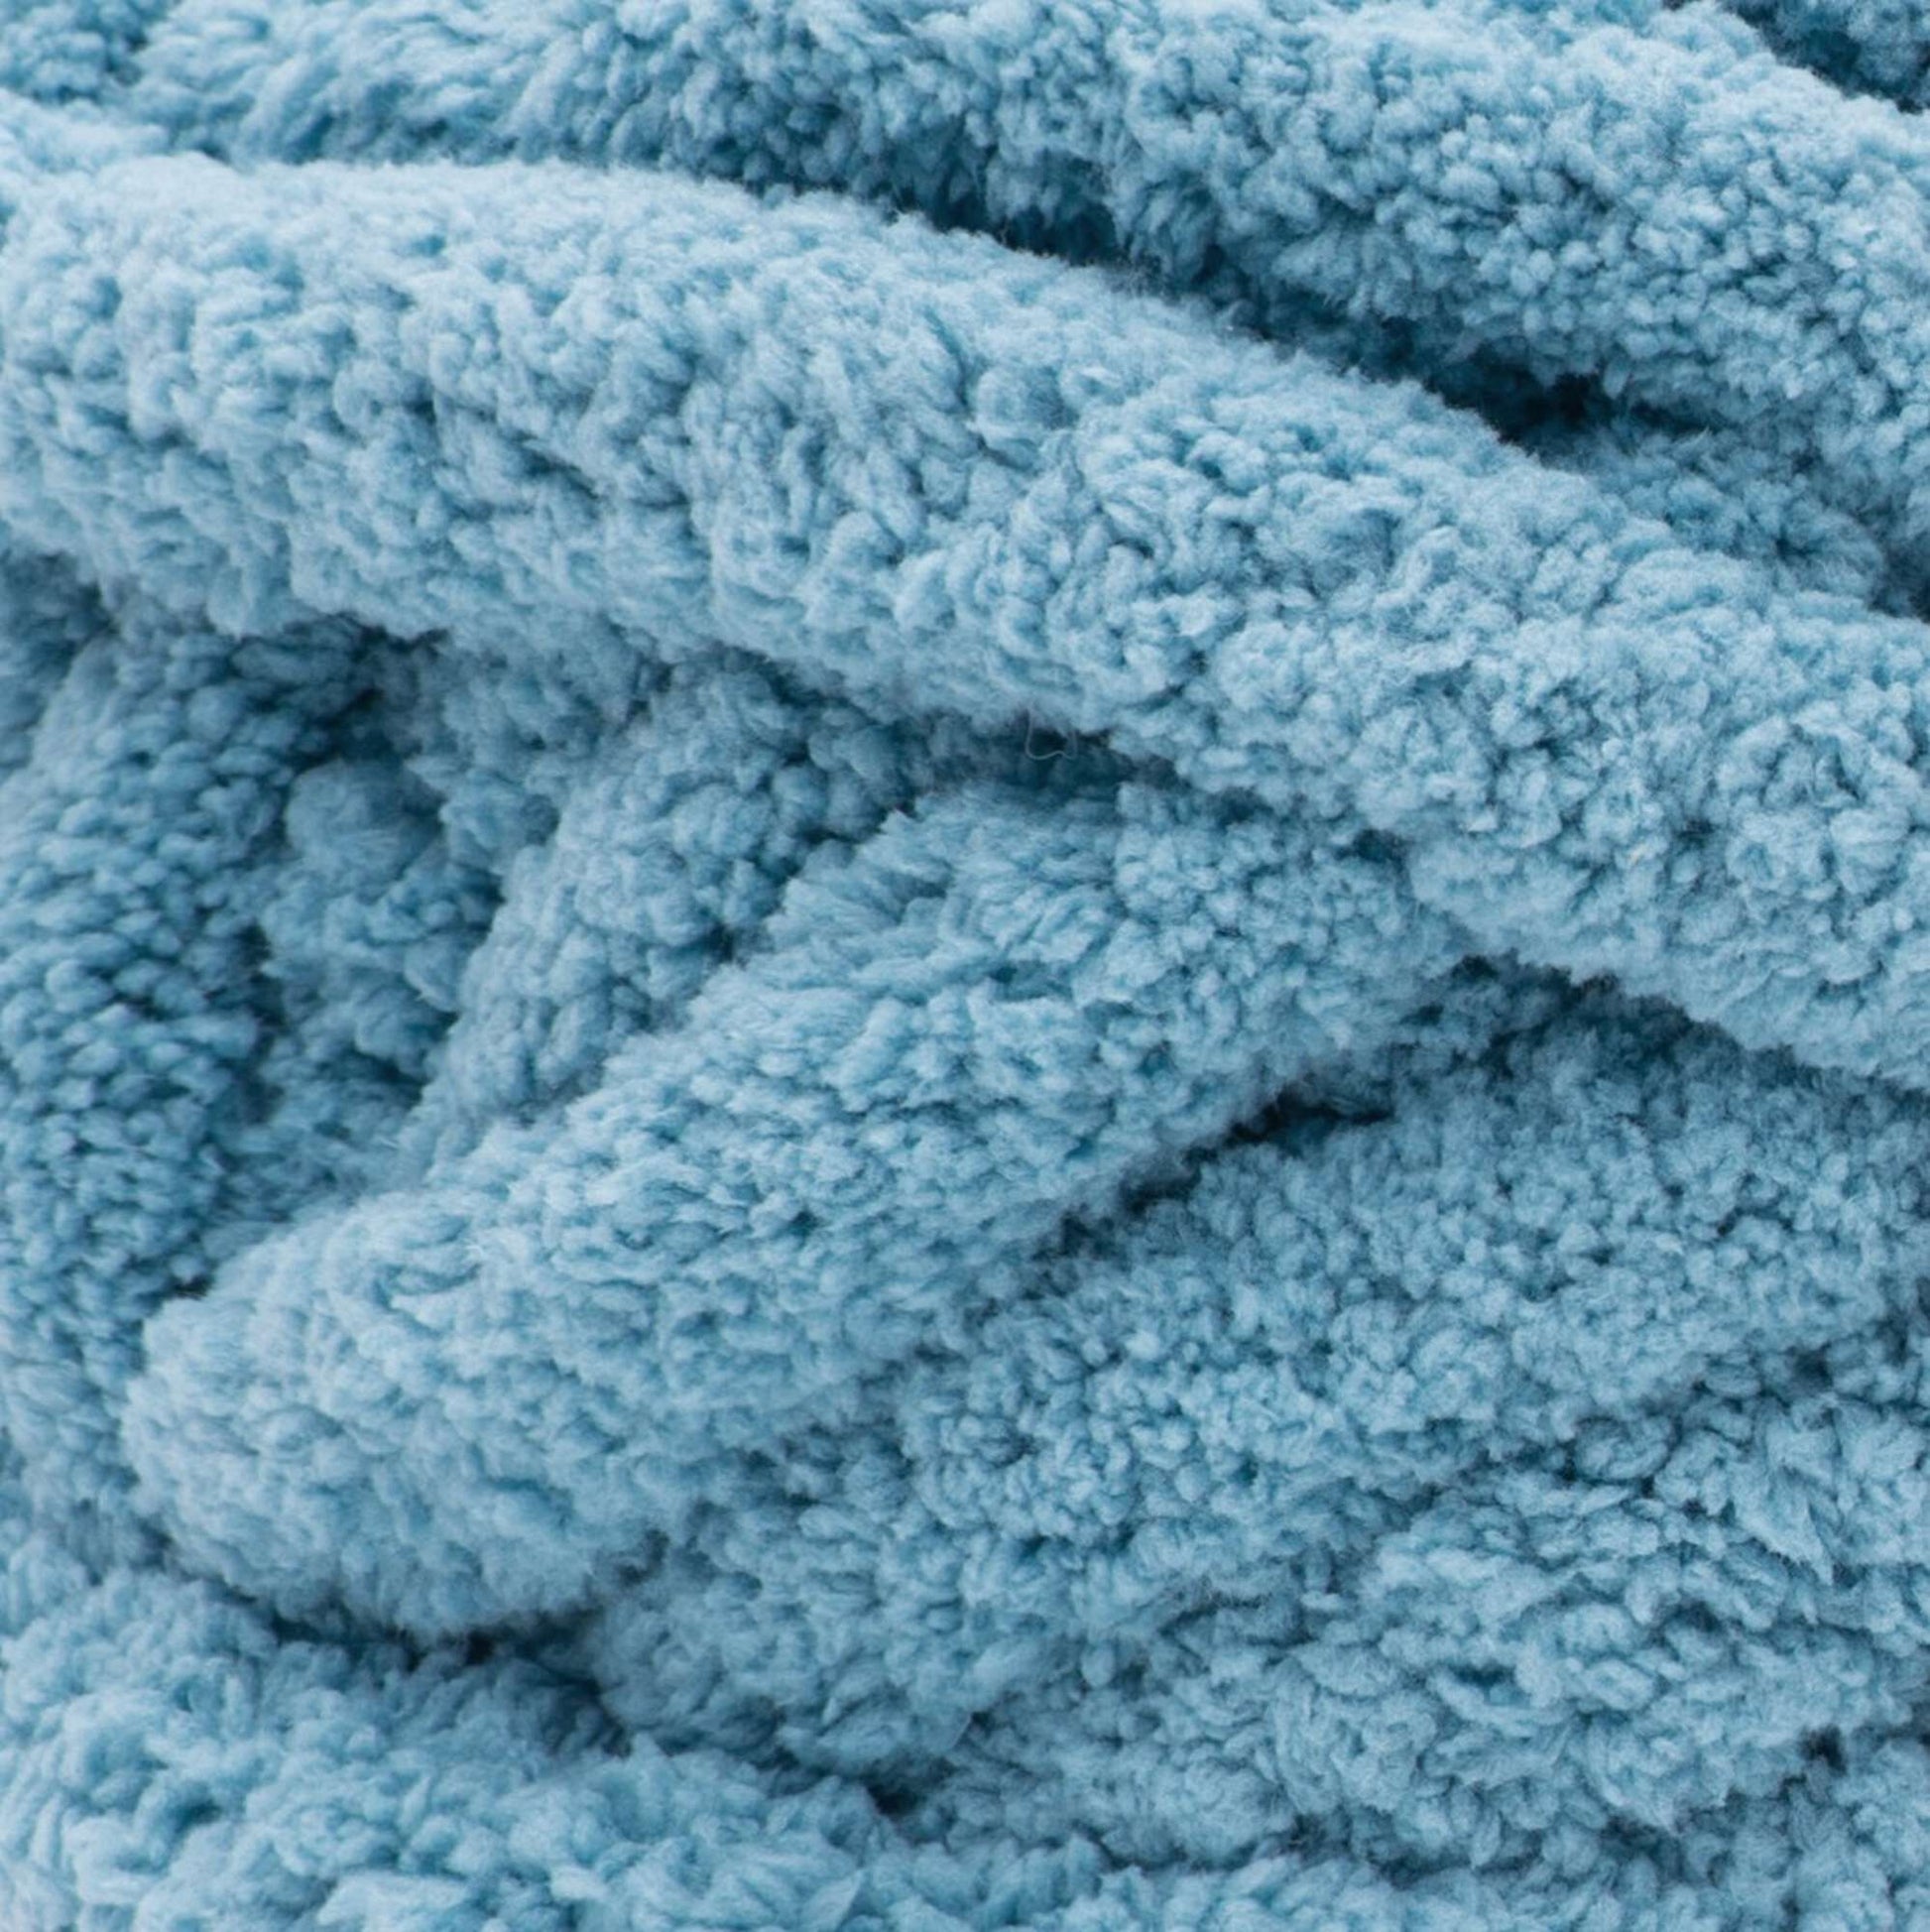 Bernat Blanket 'BIG' Knitting Yarn 300g – Readicut